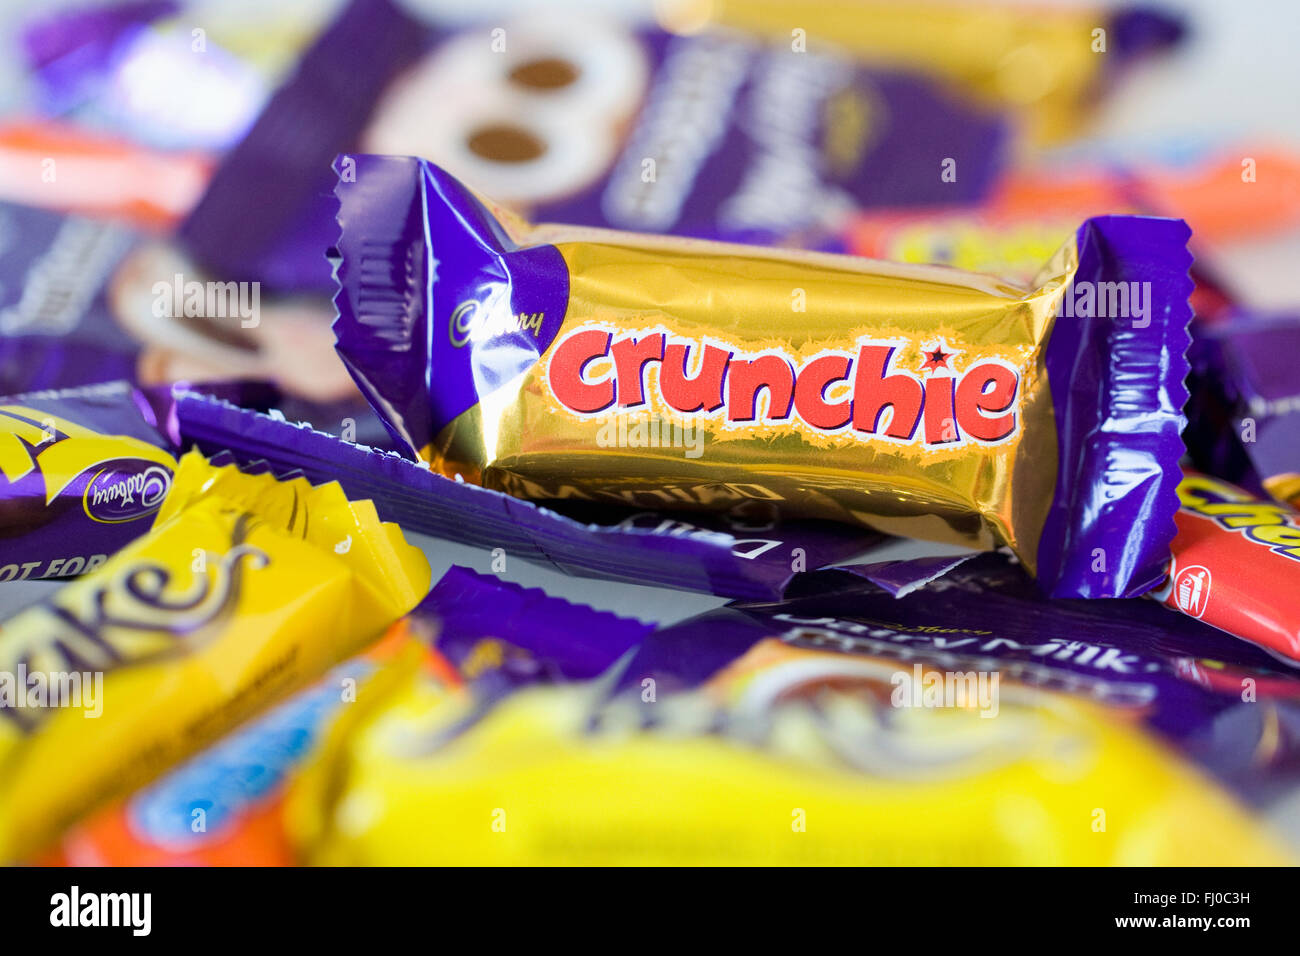 Cadbury's Crunchie bar. Stock Photo